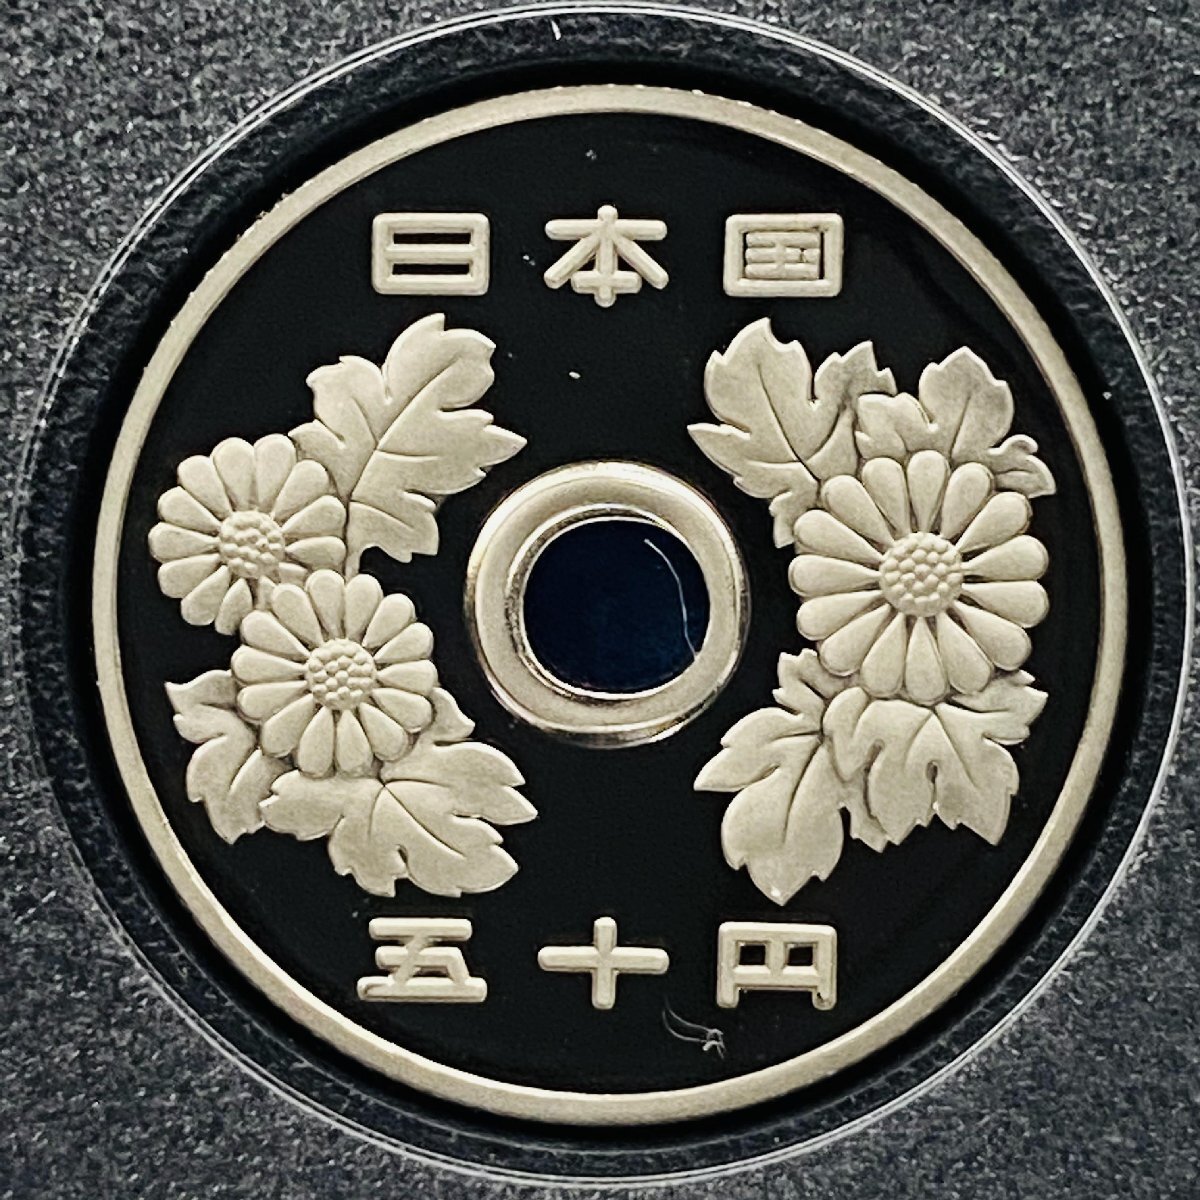 2007年 平成19年 通常プルーフ貨幣セット 額面666円 年銘板有 全揃い 記念硬貨 記念貨幣 貨幣組合 日本円 限定貨幣 コレクション P2007_画像8